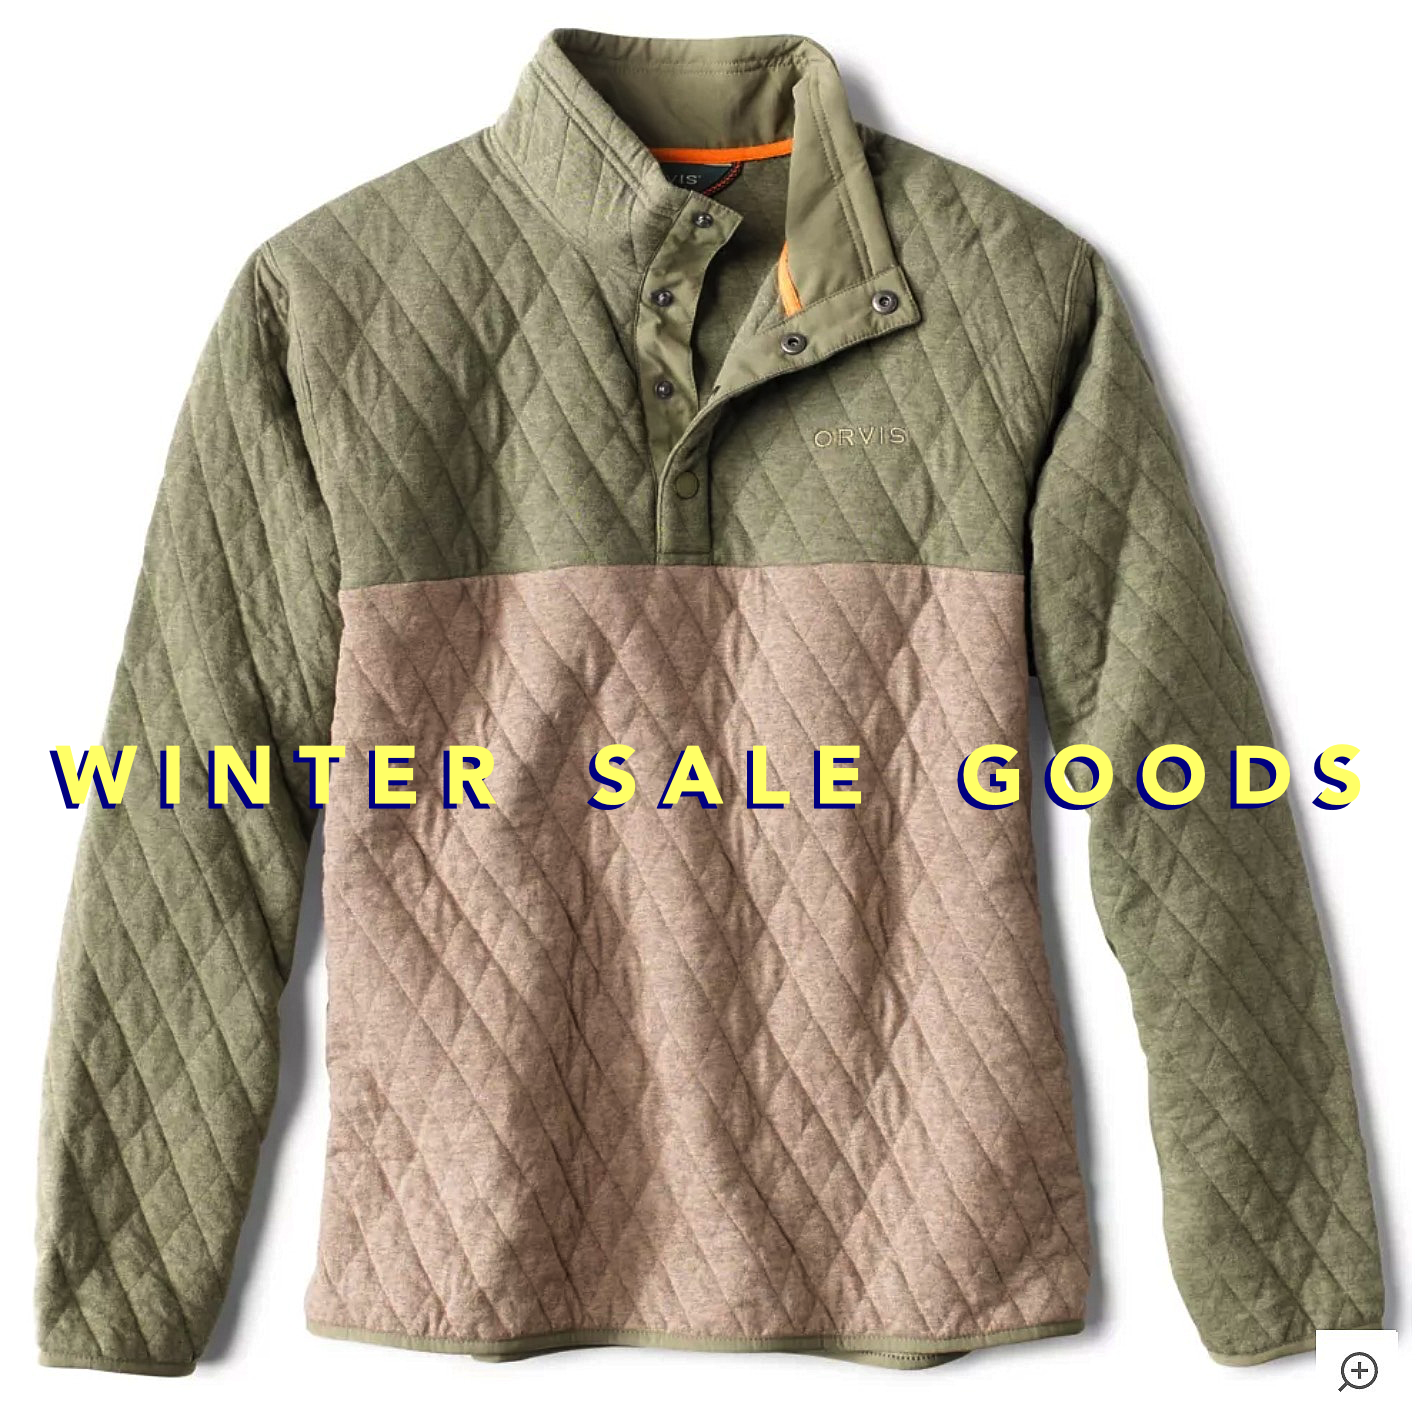 Winter Sale Goods